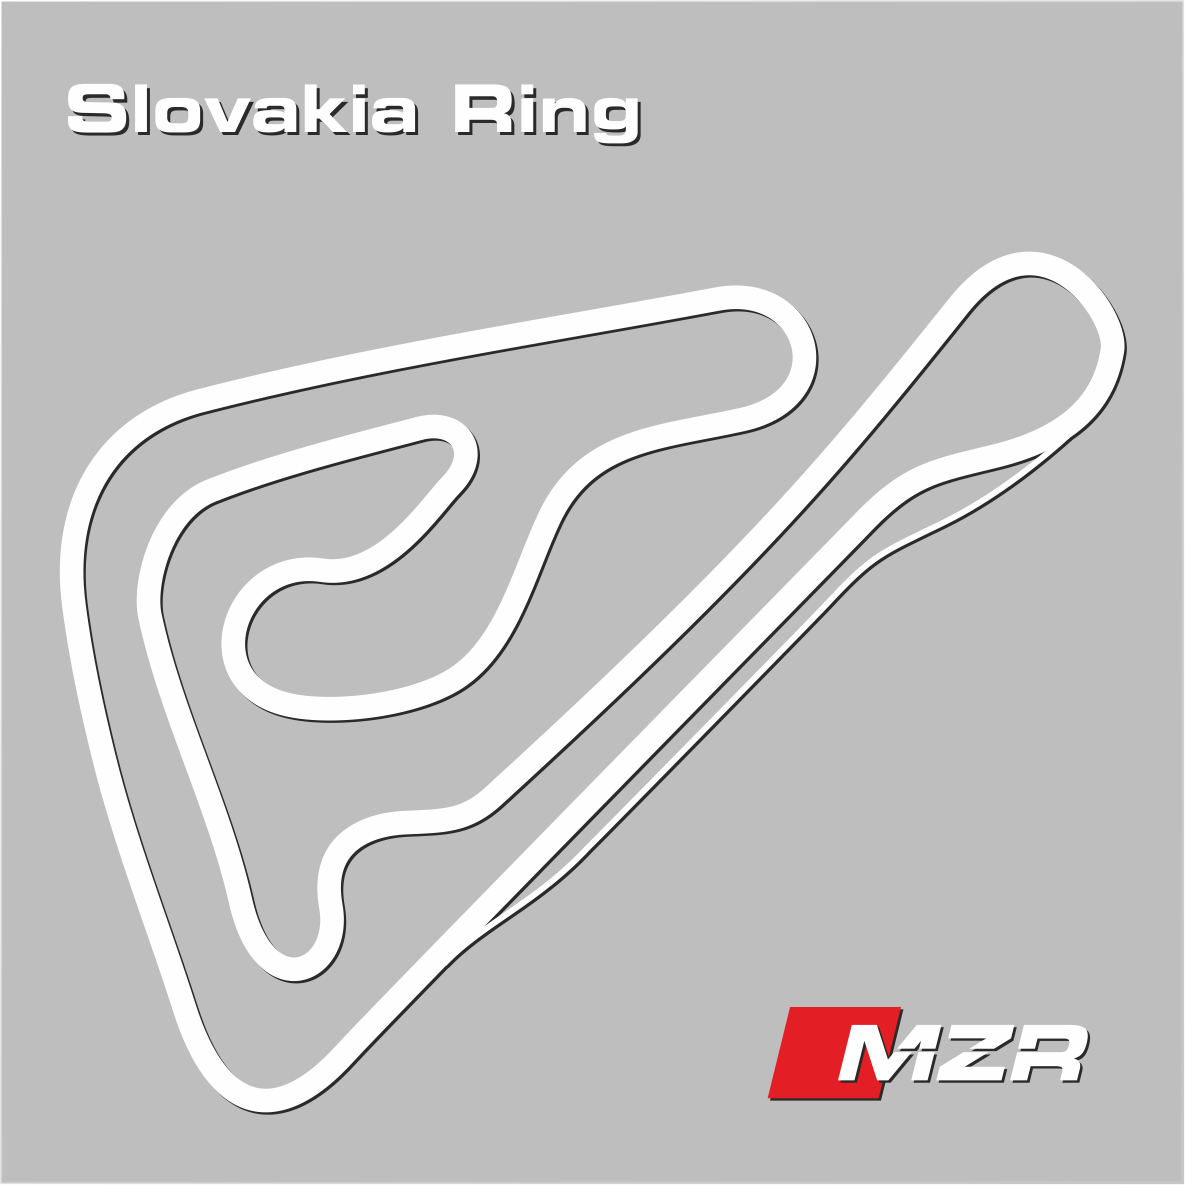 Slovakia Ring